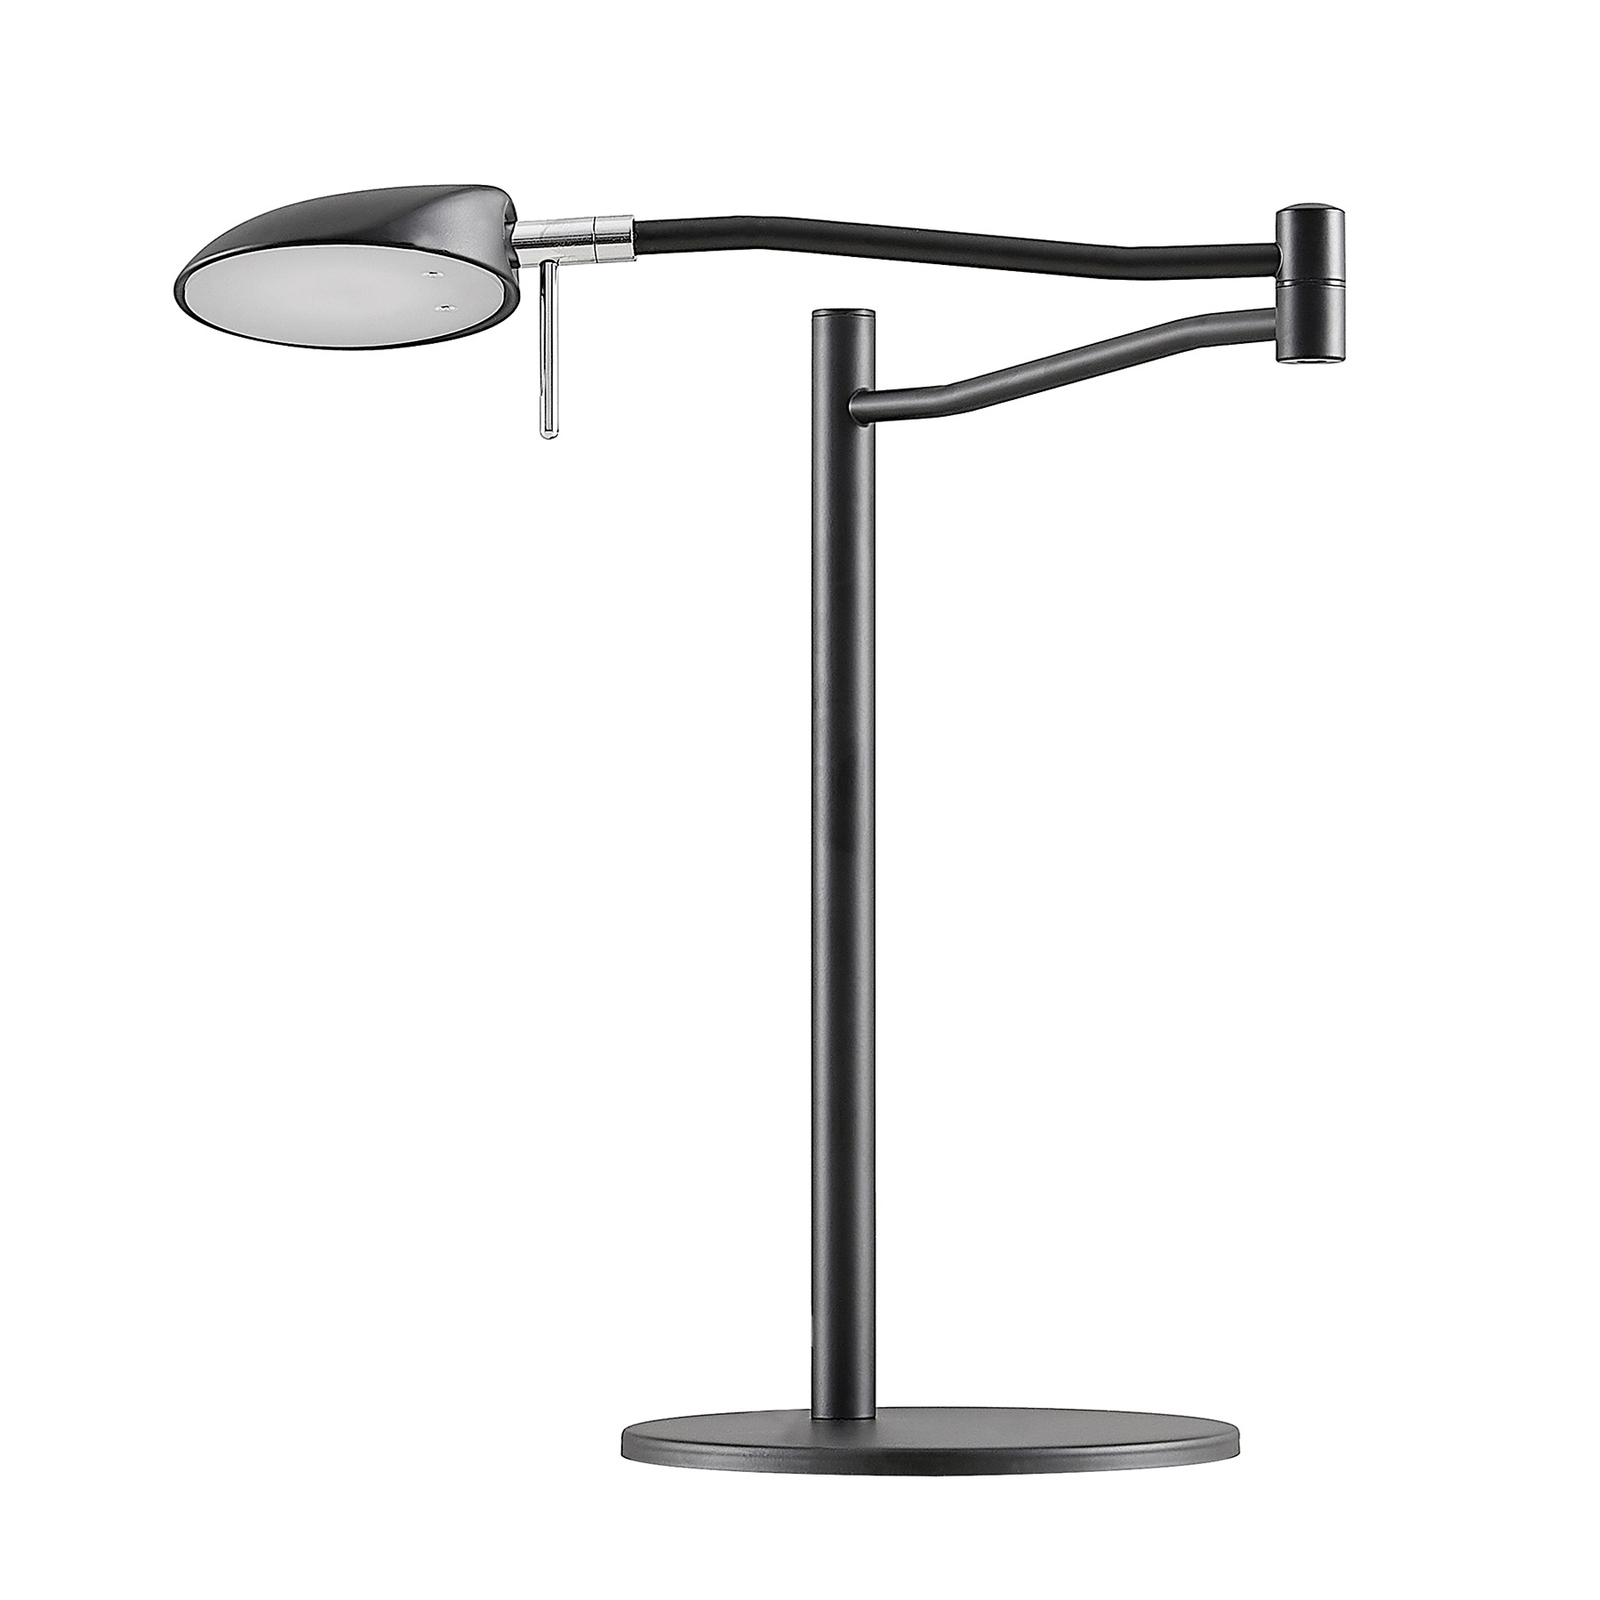 Lampka biurkowa LED Lucande Dessania, elastyczna